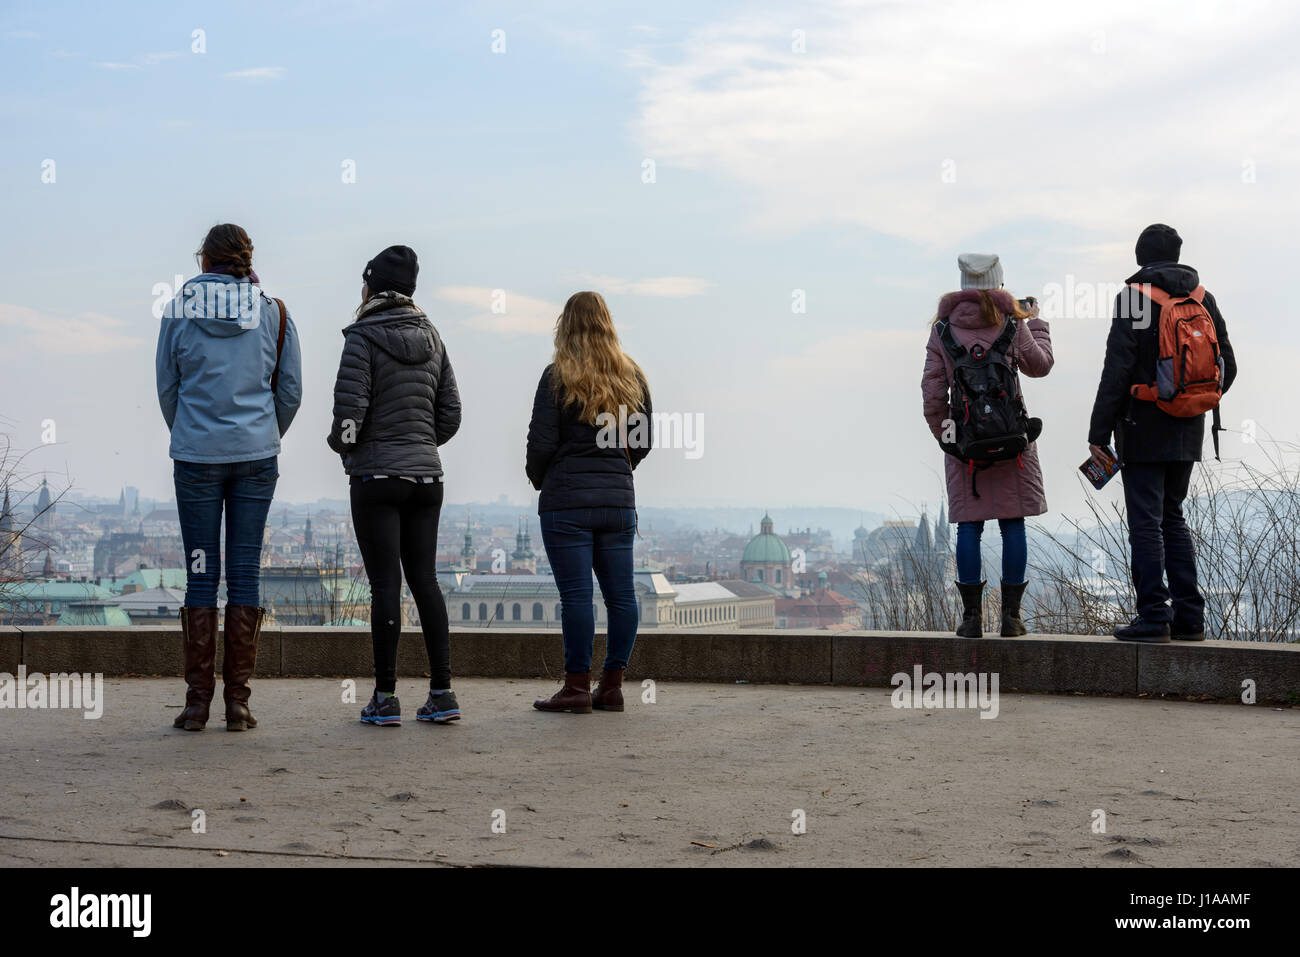 Les touristes sont en observant le panorama de la ville d'un des points d'observation dans le parc de Letna à Prague, République tchèque. Banque D'Images